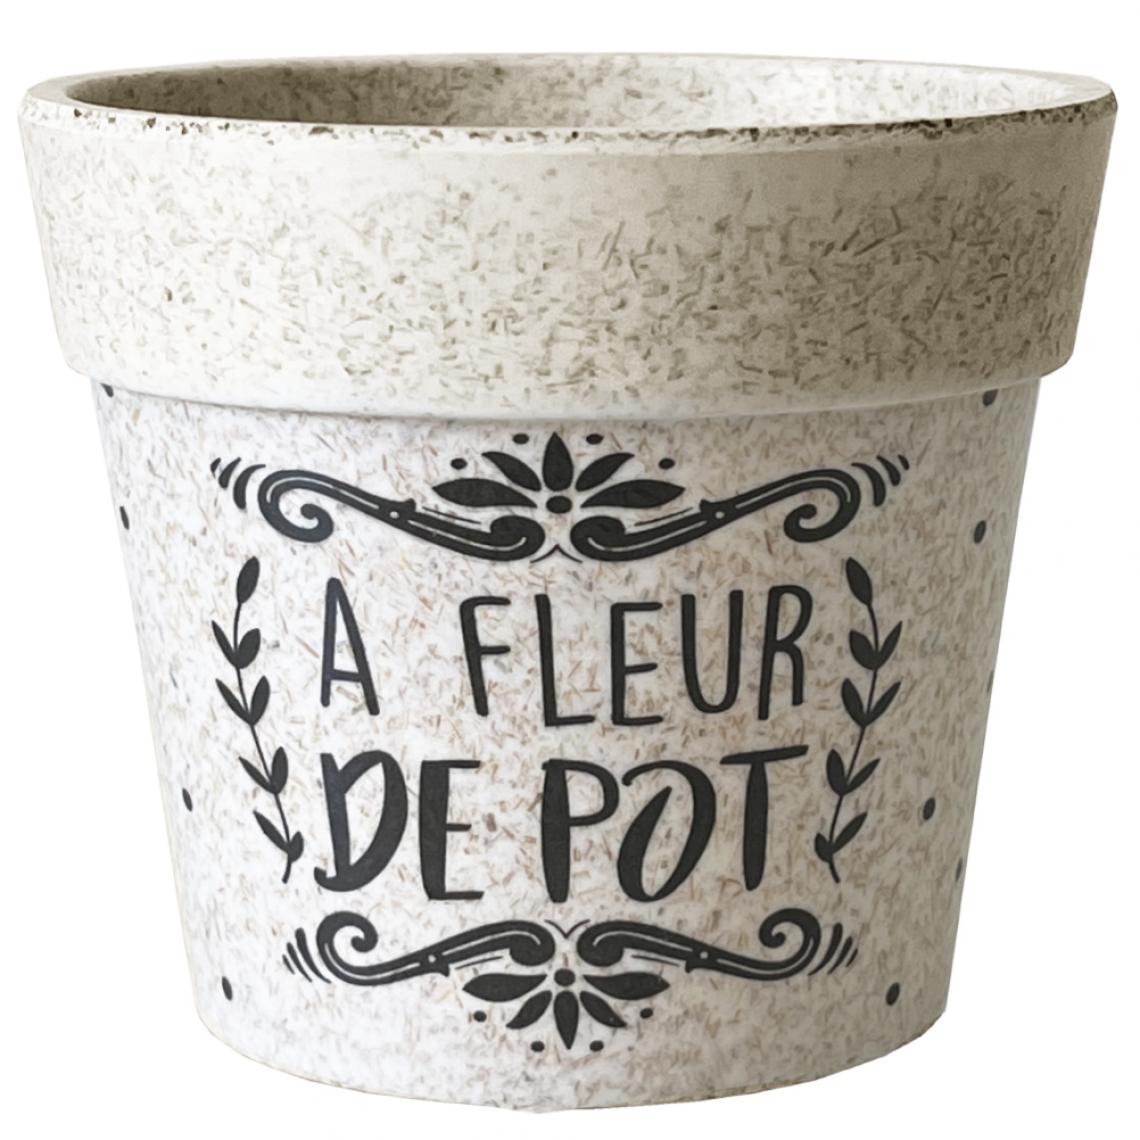 Sudtrading - Cache Pot A Fleur de Pot en Bambou 8.5 cm - Pots, cache-pots